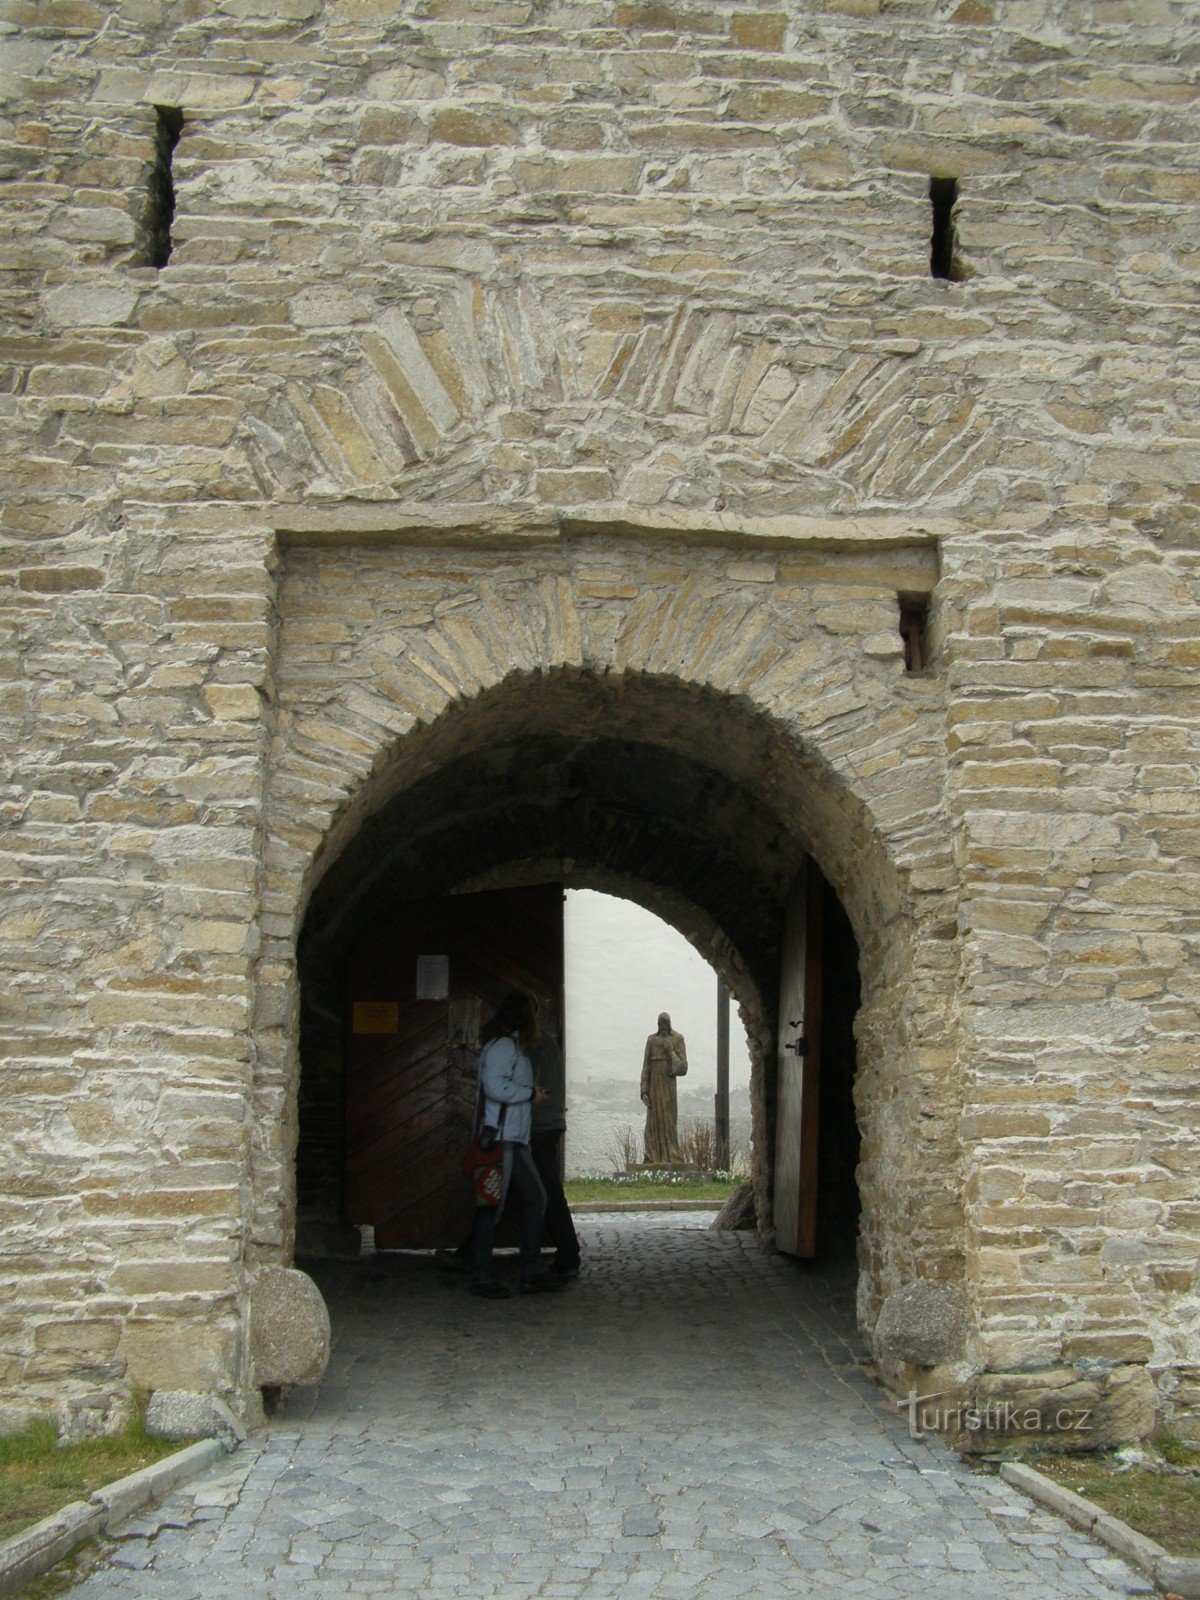 Velká Bíteš - una ciudad con una iglesia fortaleza